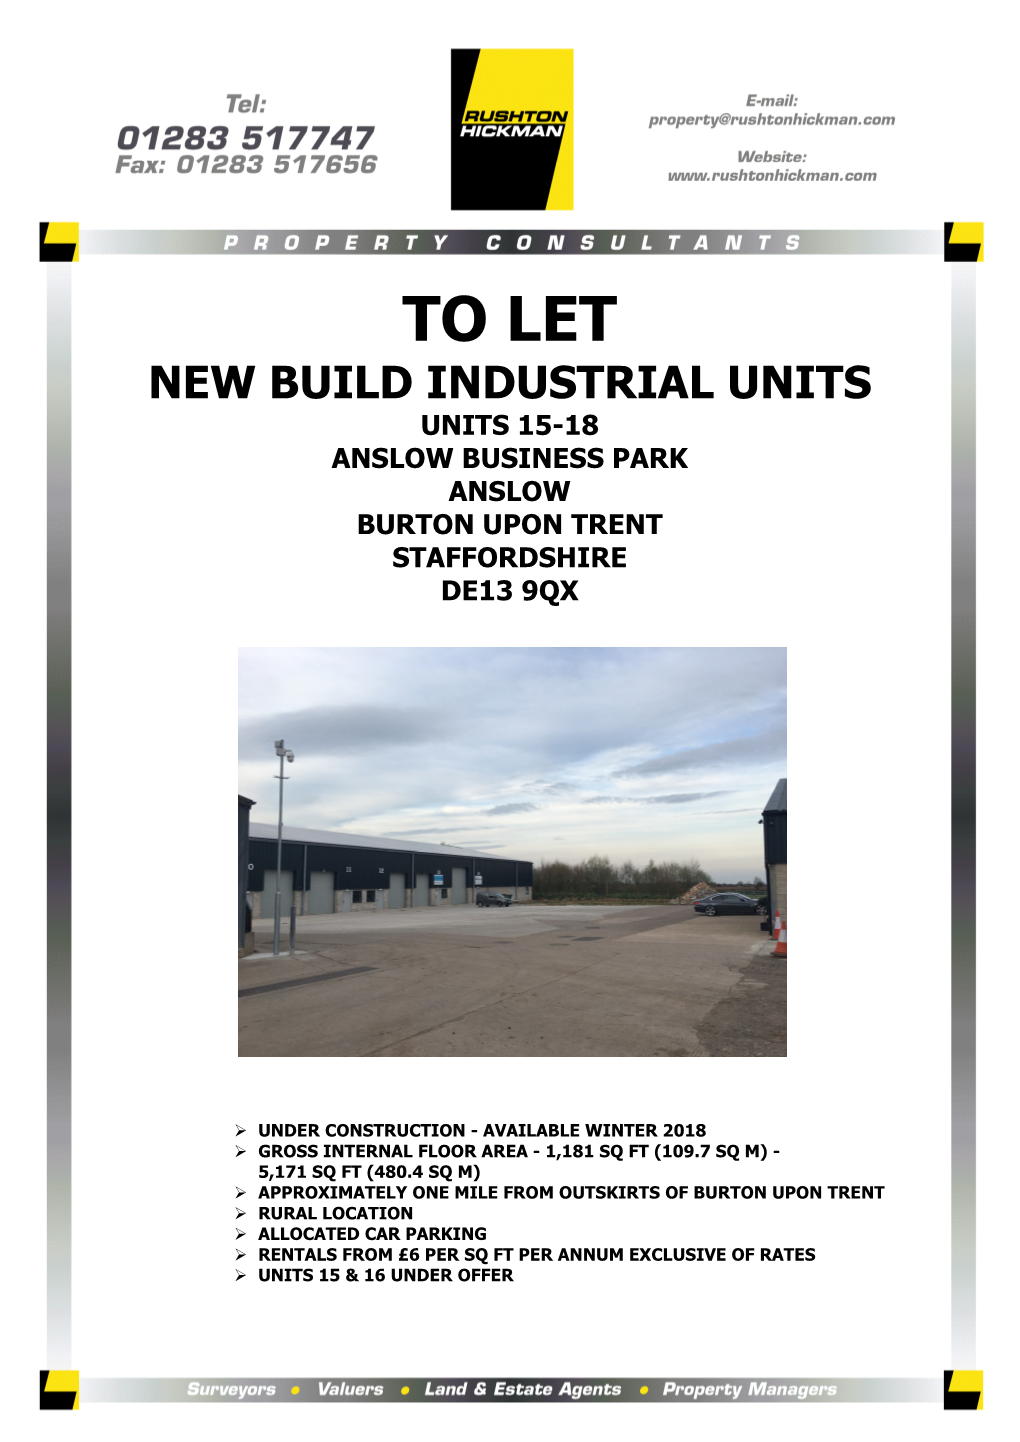 To Let New Build Industrial Units Units 15-18 Anslow Business Park Anslow Burton Upon Trent Staffordshire De13 9Qx